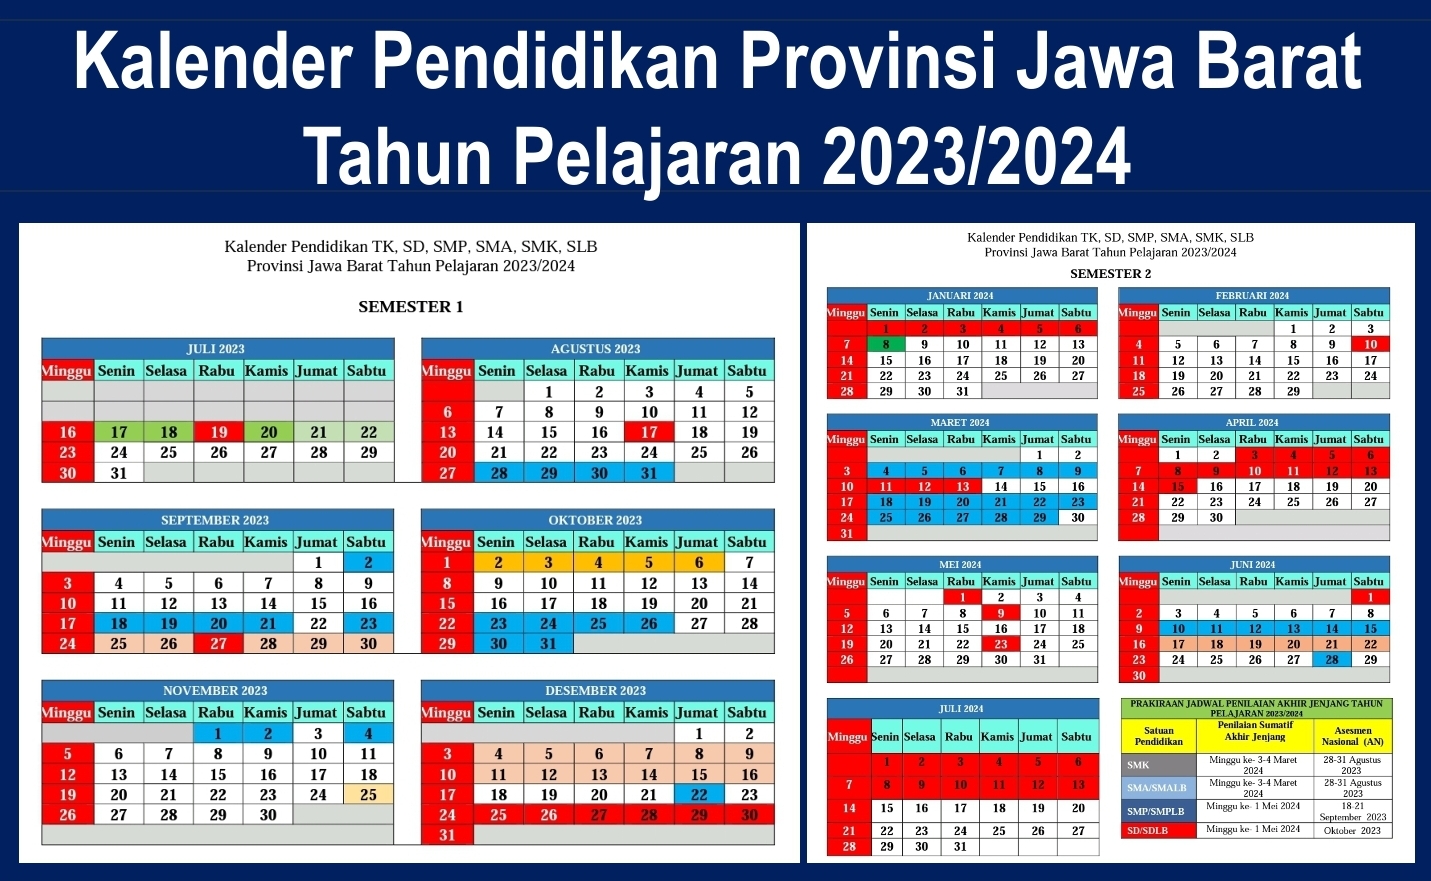 Kalender Pendidikan 2023/2024 Jawa Barat